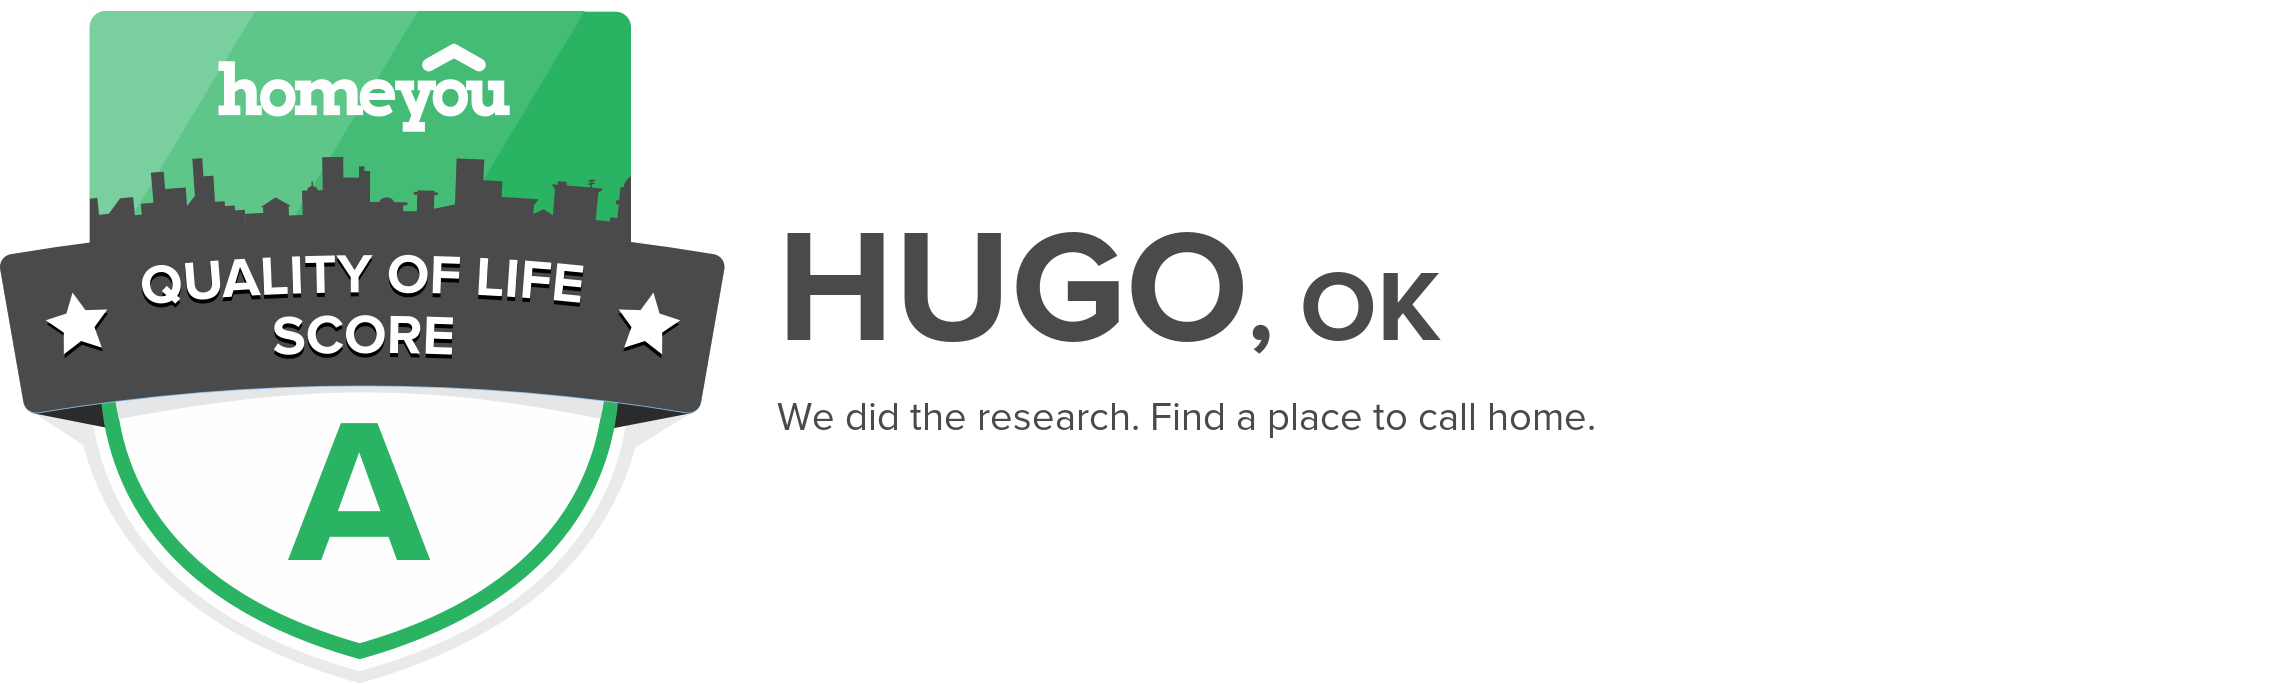 Hugo, OK